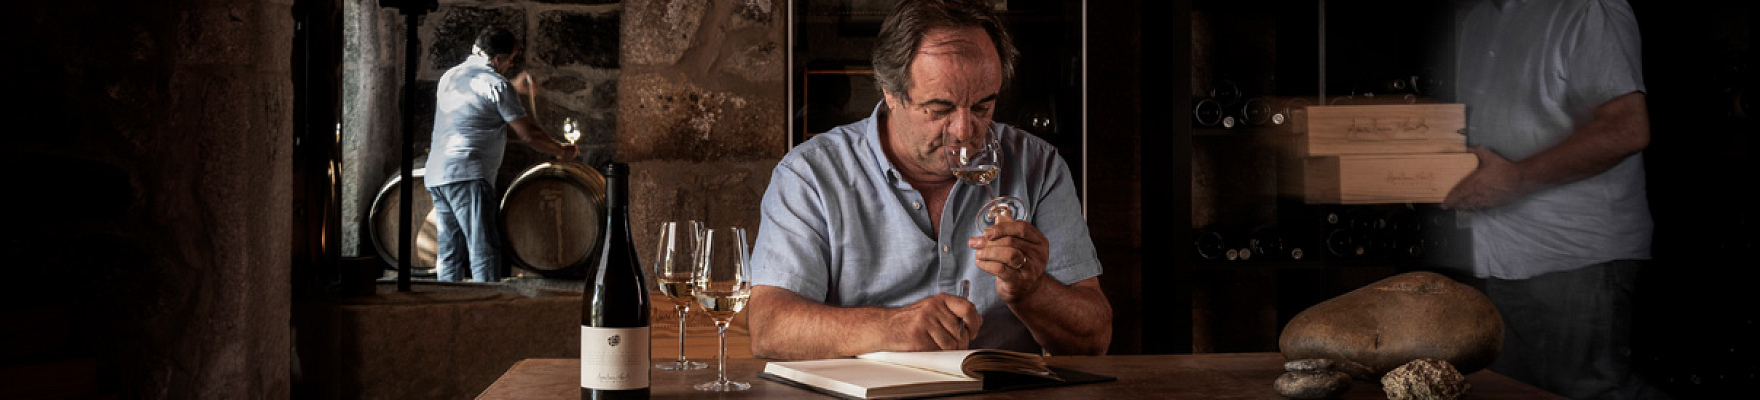 Anselmo Mendes Winemaker